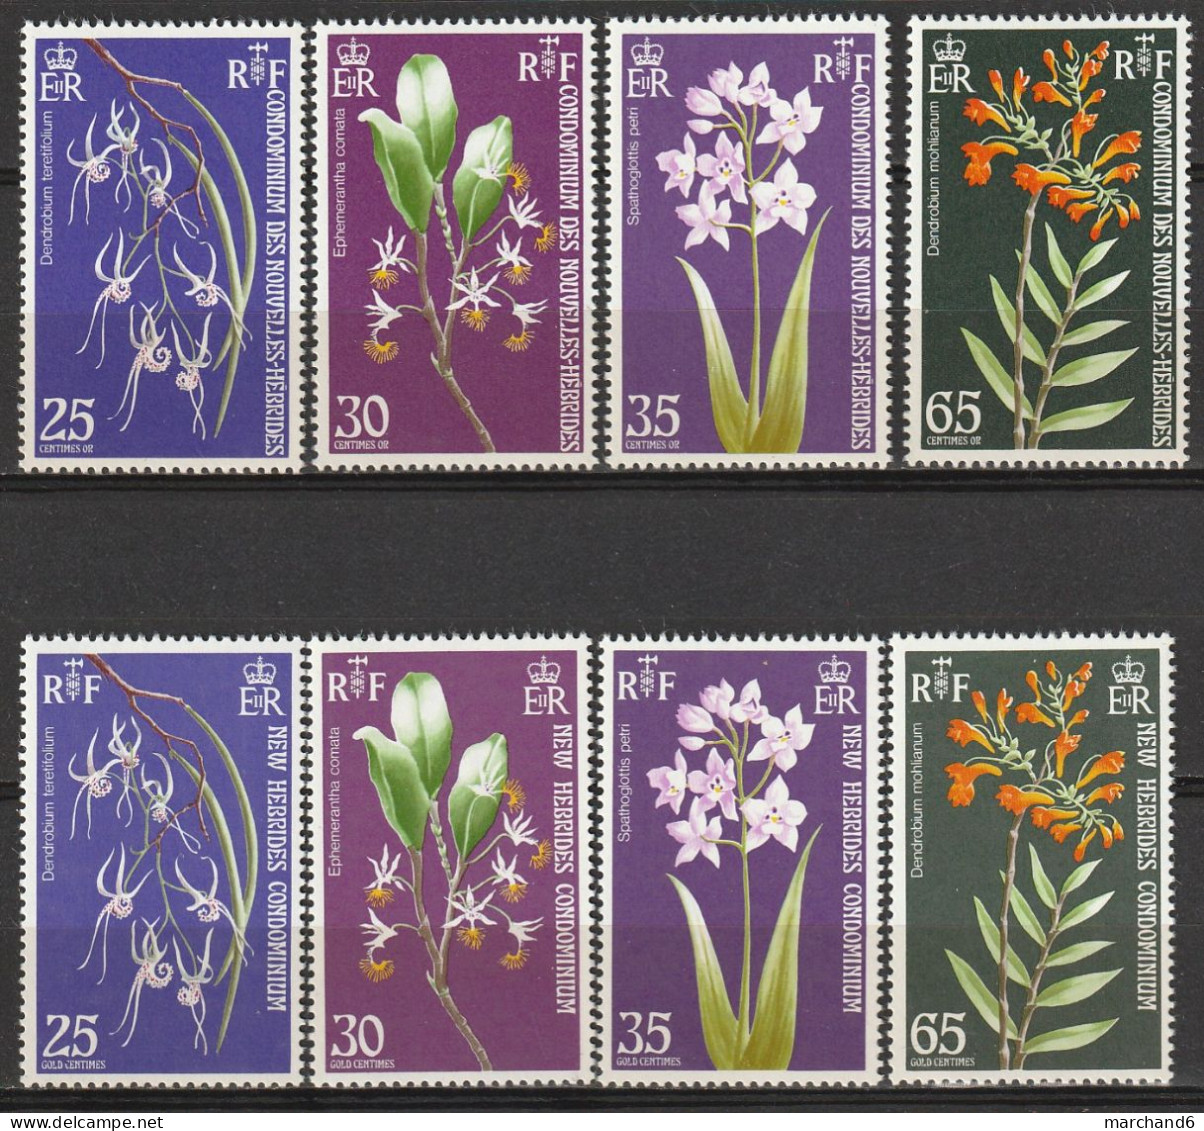 Nouvelles Hébrides Orchidées 1973 France Anglaise N°358/365 Neuf** - Nuovi